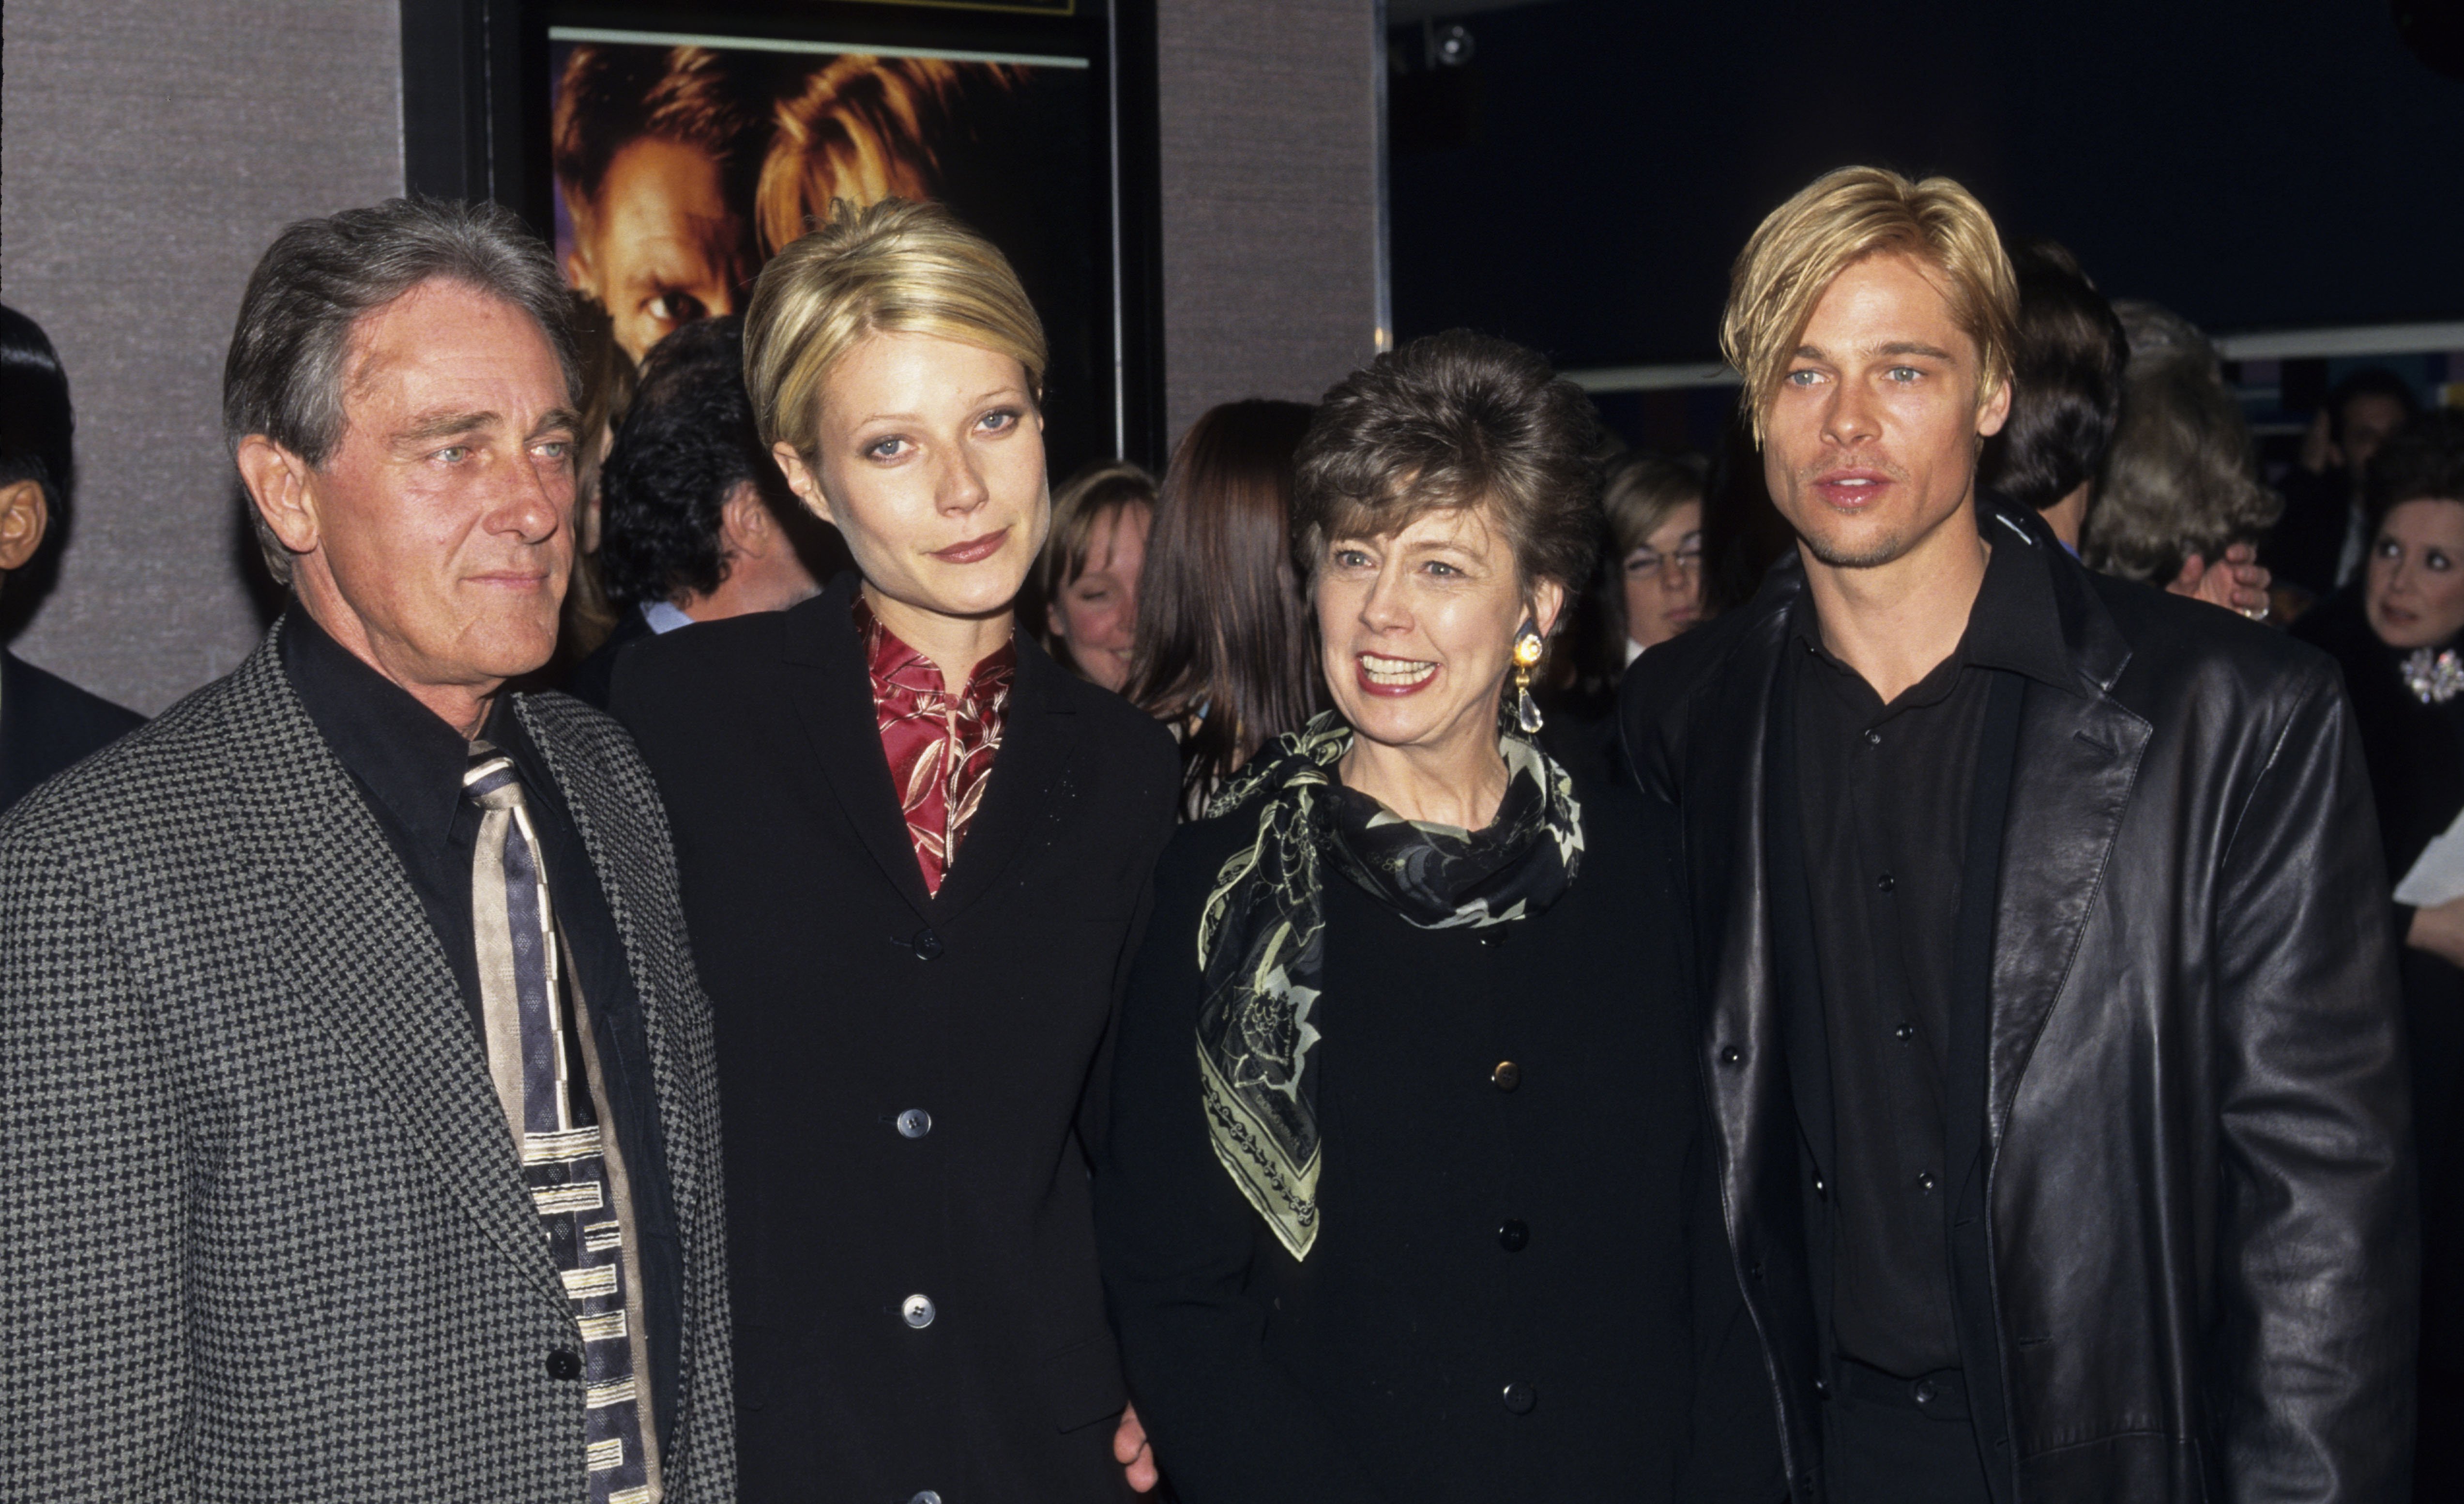 Gwyneth Paltrow, Brad Pitt, les parents de Brad Pitt, William et Jane Pitt, assistent à la première de "The Devil's Own" en 1997. | Source : Getty Images